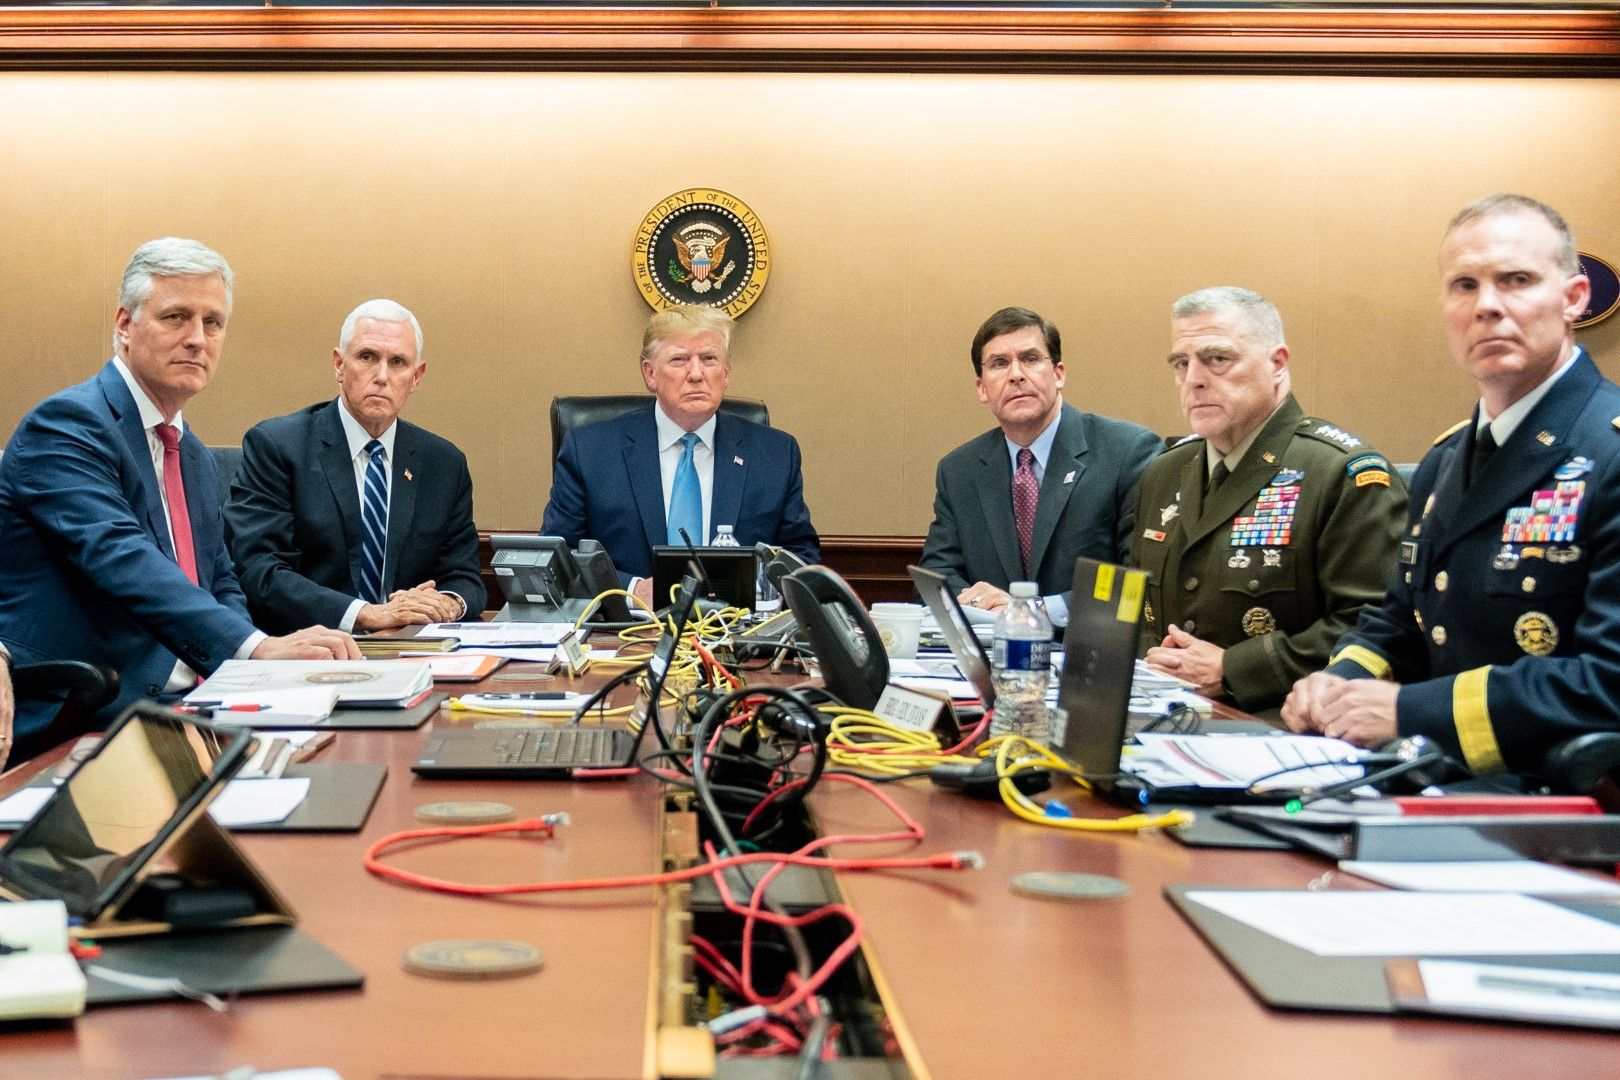 (От ляво) Робърт О'Брайън, вицепрезидентът Майк Пенс, Доналд Тръмп, министърът на отбраната Марк Еспър и генералите Марк Мили и Маркус Евънс - хората, които са в основата на военната стратегия на САЩ